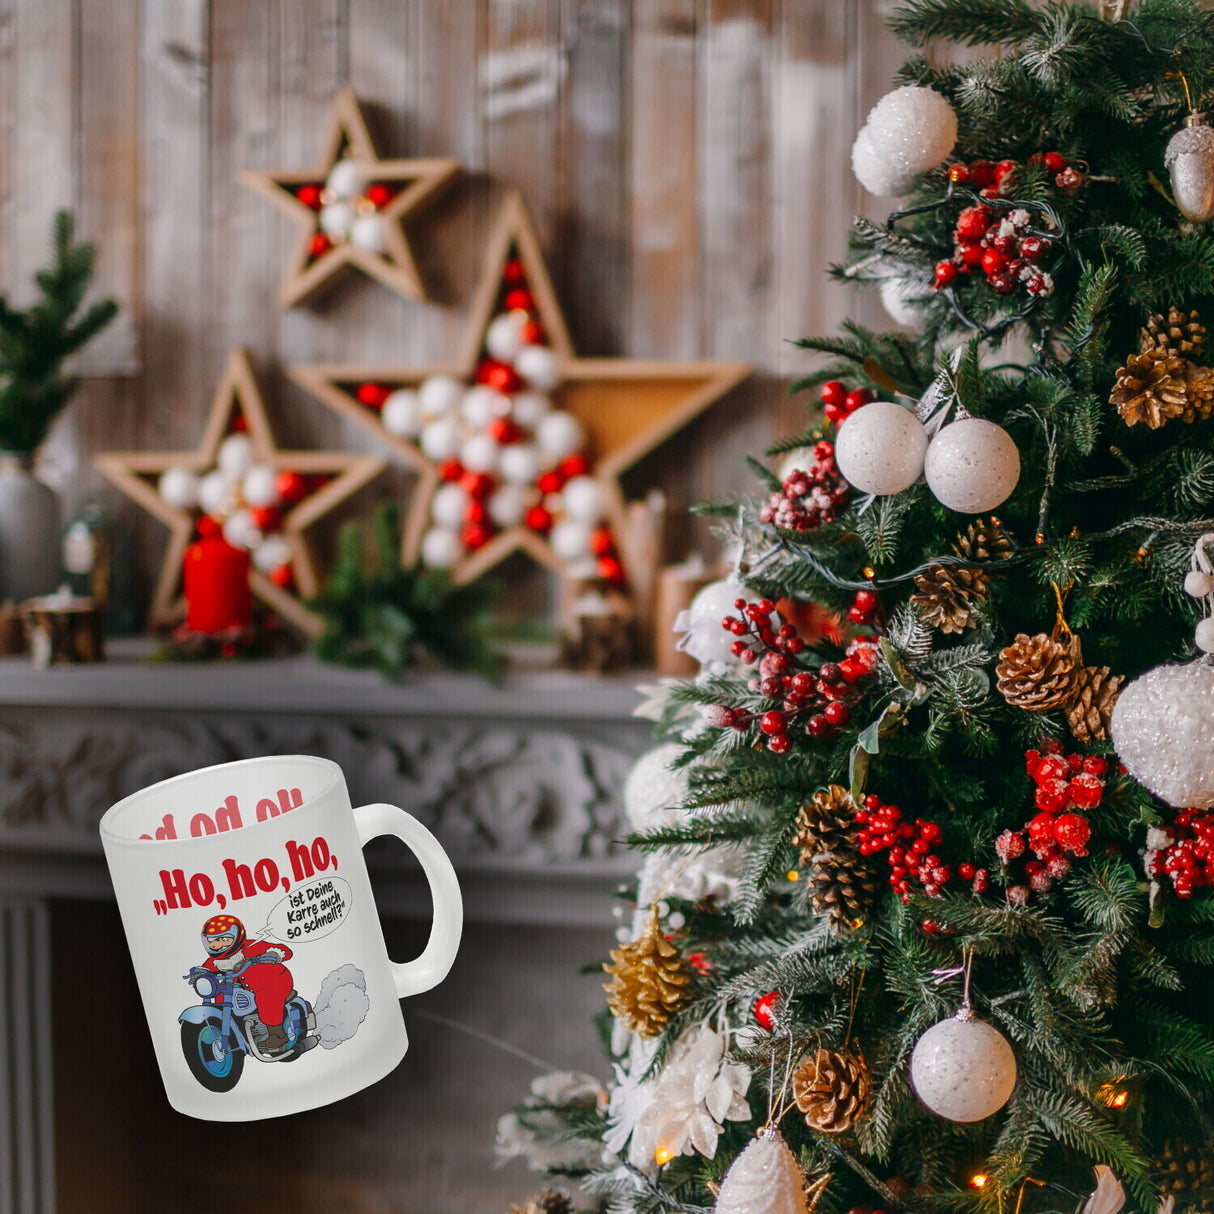 Kaffeebecher zum Thema Weihnachten mit Nikolaus auf dem Motorrad Motiv